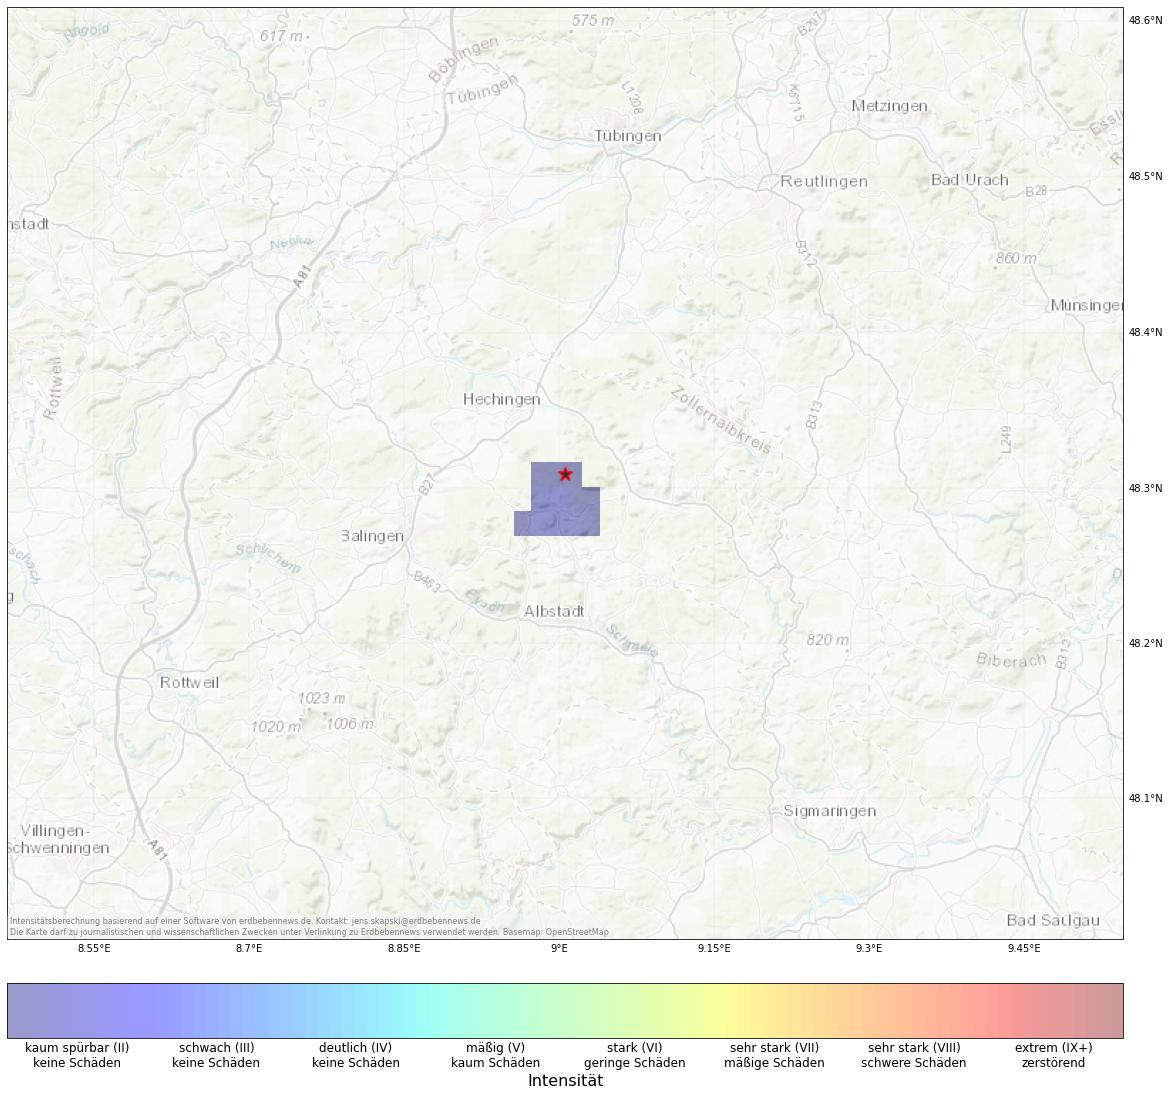 Berechnete Intensität (ShakeMap) des Erdbebens der Stärke 2.1 am 01. November, 19:48 in Deutschland